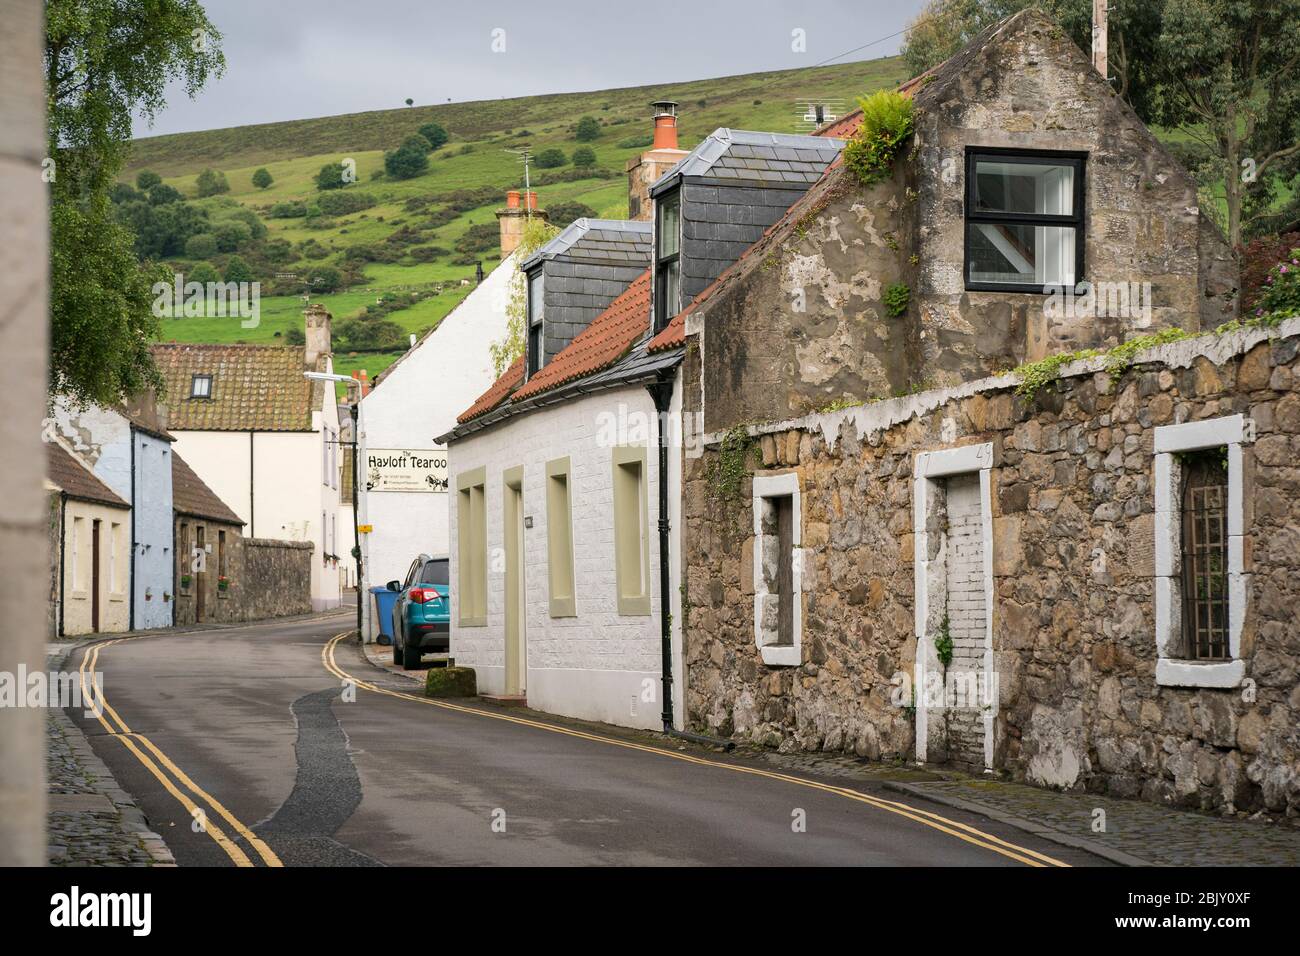 Strada asfaltata stretta tortuosa passato case in pietra nel piccolo villaggio medievale, Falkland, Fife, Scozia, Regno Unito, Europa Foto Stock